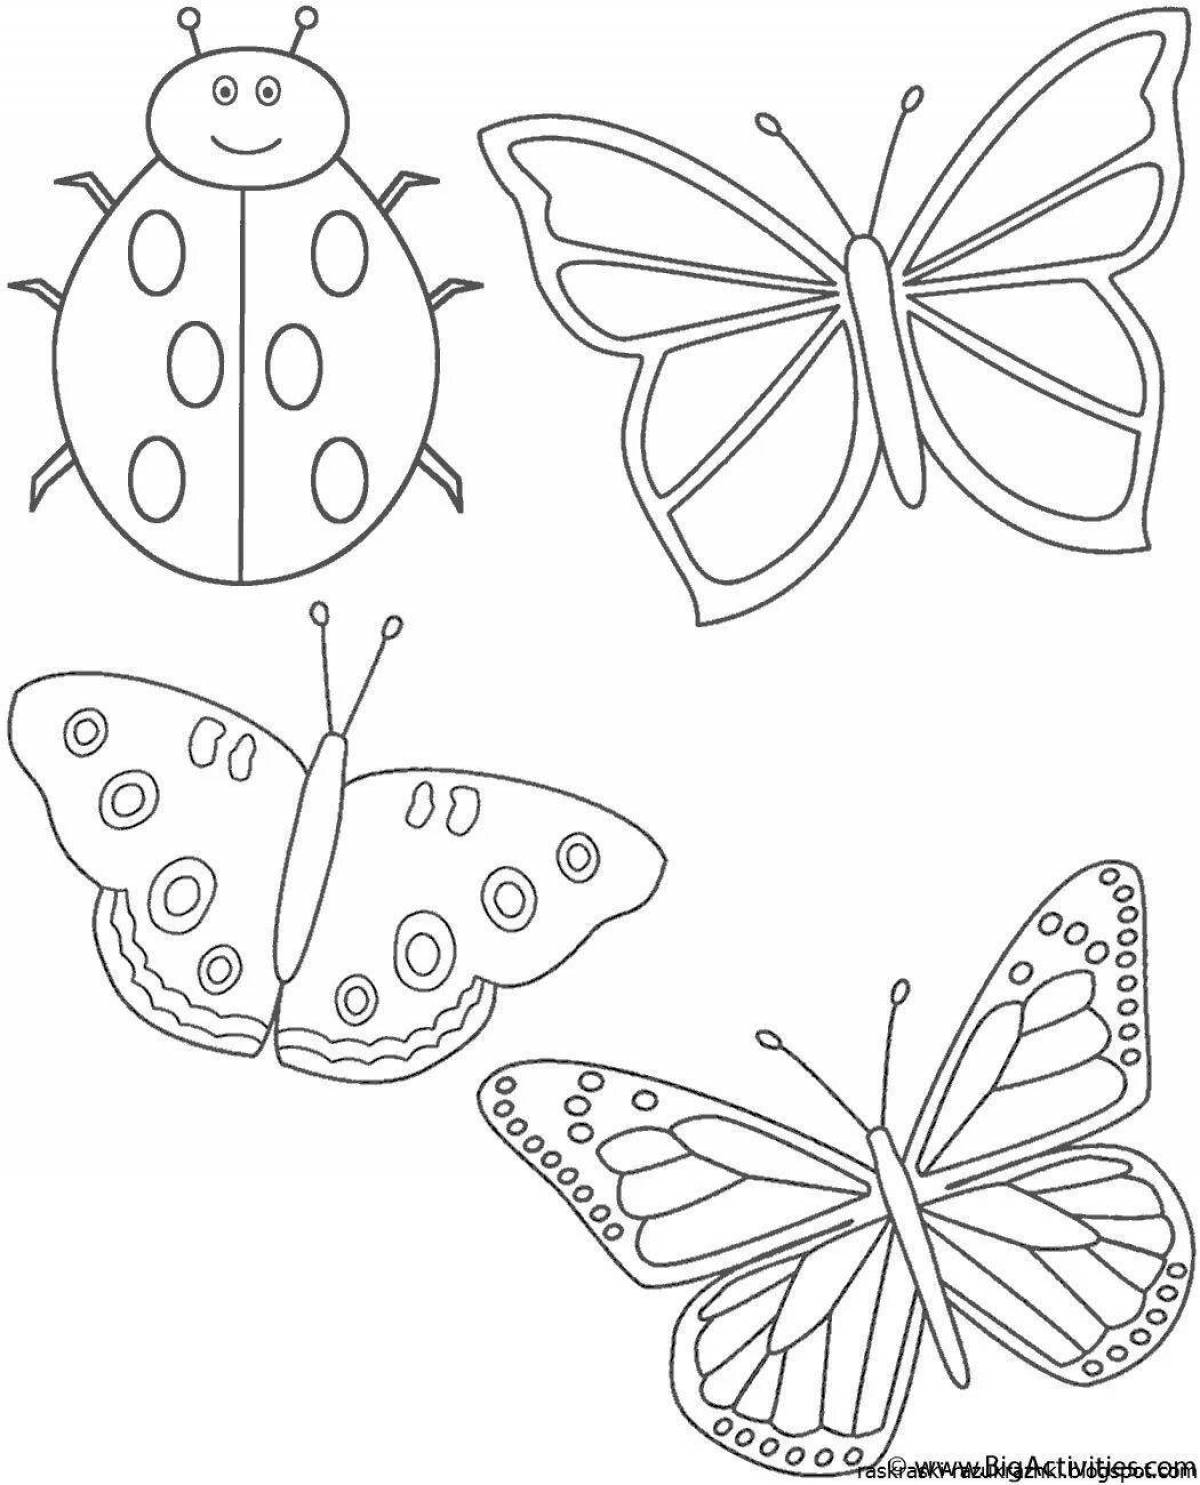 Трафарет детям 4 года. Рисунки для раскрашивания. Бабочка раскраска для детей. Раскраска для малы бабочка. Насекомые. Раскраска.